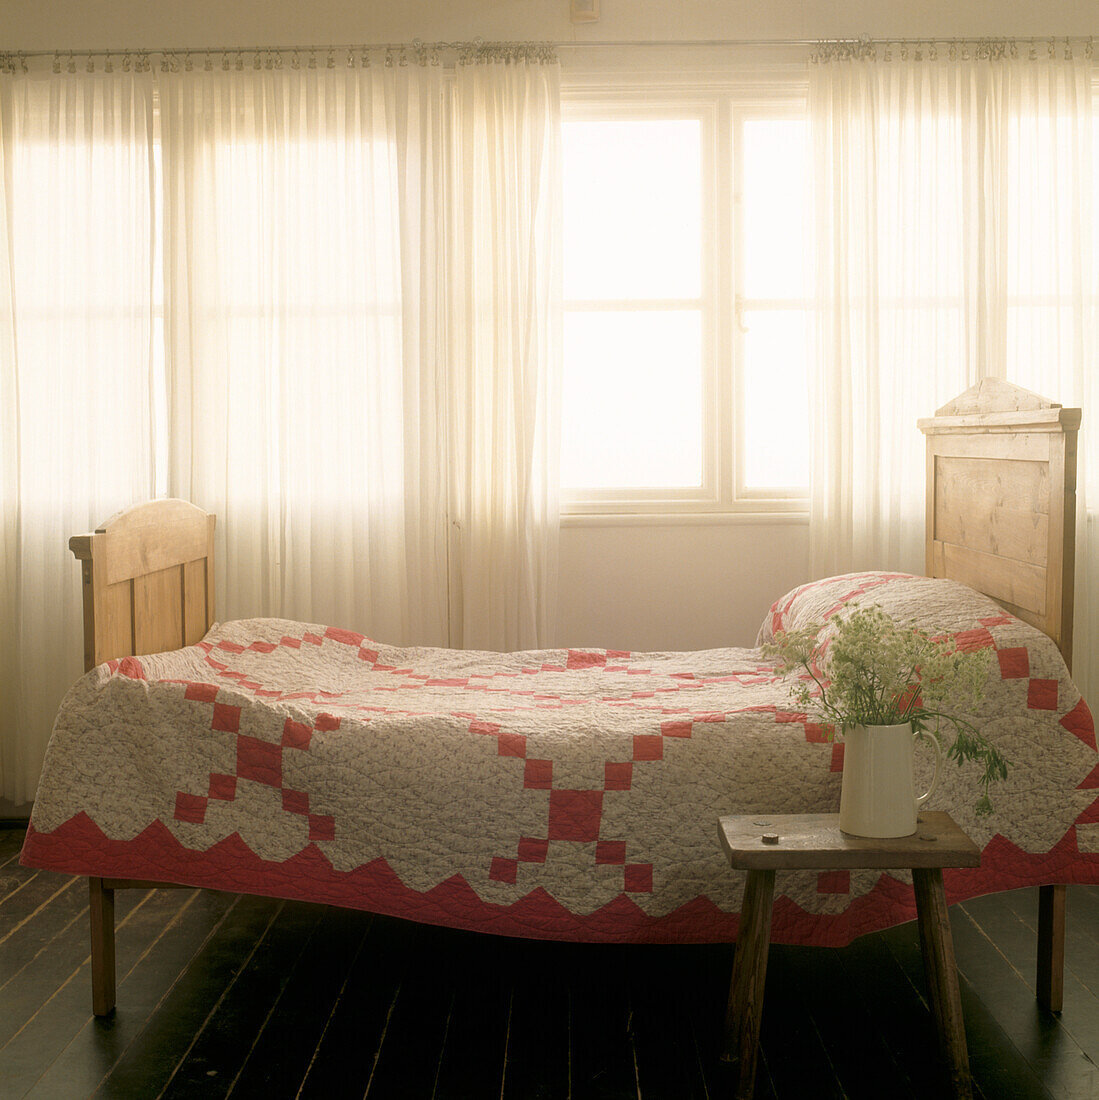 Fensterbild mit Einzelbett aus Kiefernholz und rot-weißer Bettdecke